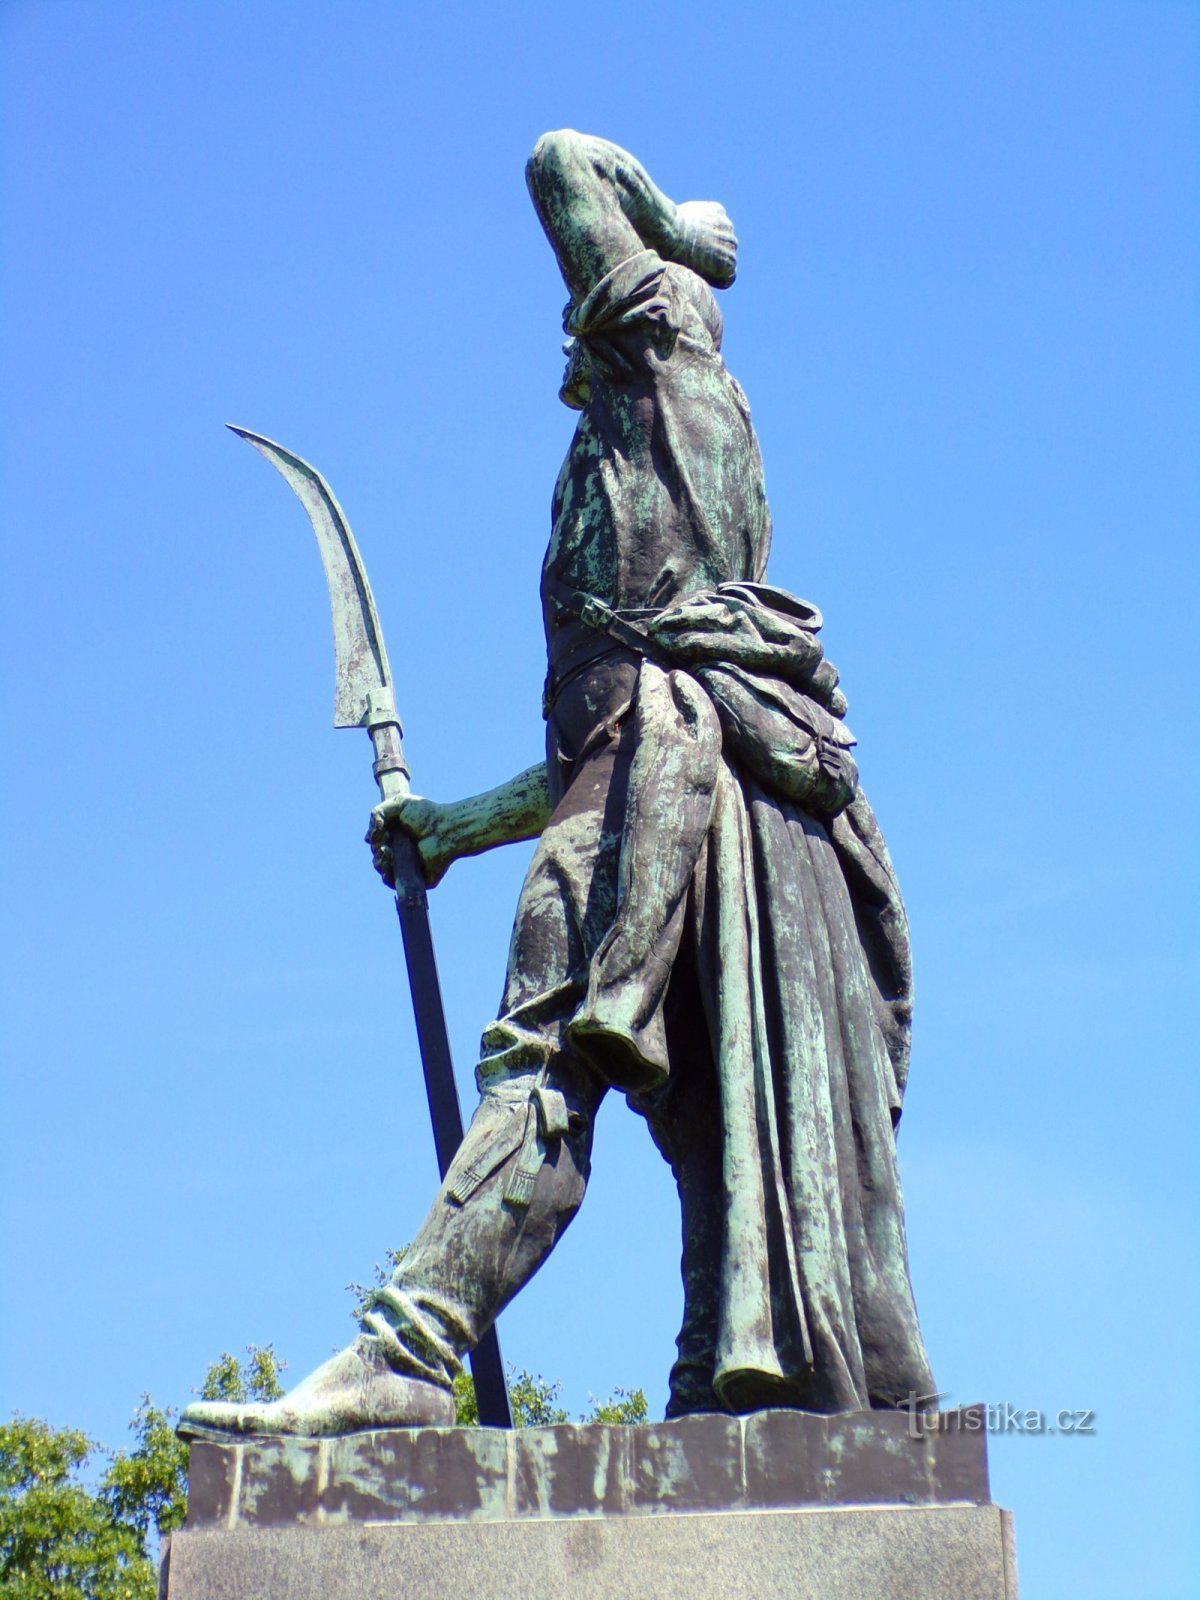 Đài tưởng niệm cuộc nổi dậy của nông dân năm 1775 (Chlumec nad Cidlinou, ngày 5.6.2022 tháng XNUMX năm XNUMX)